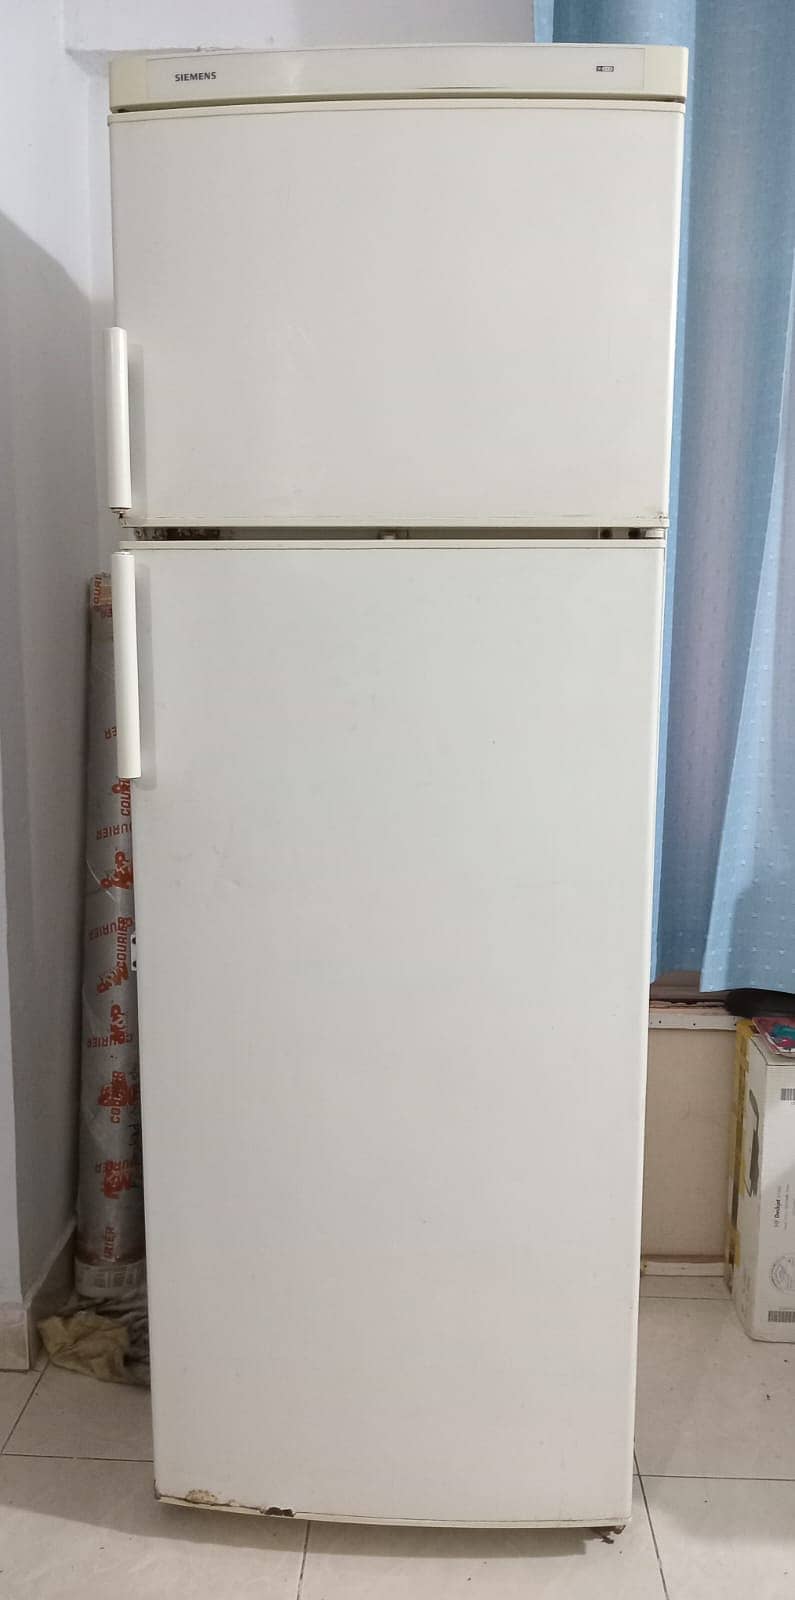 Siemens fridge non inverter 1